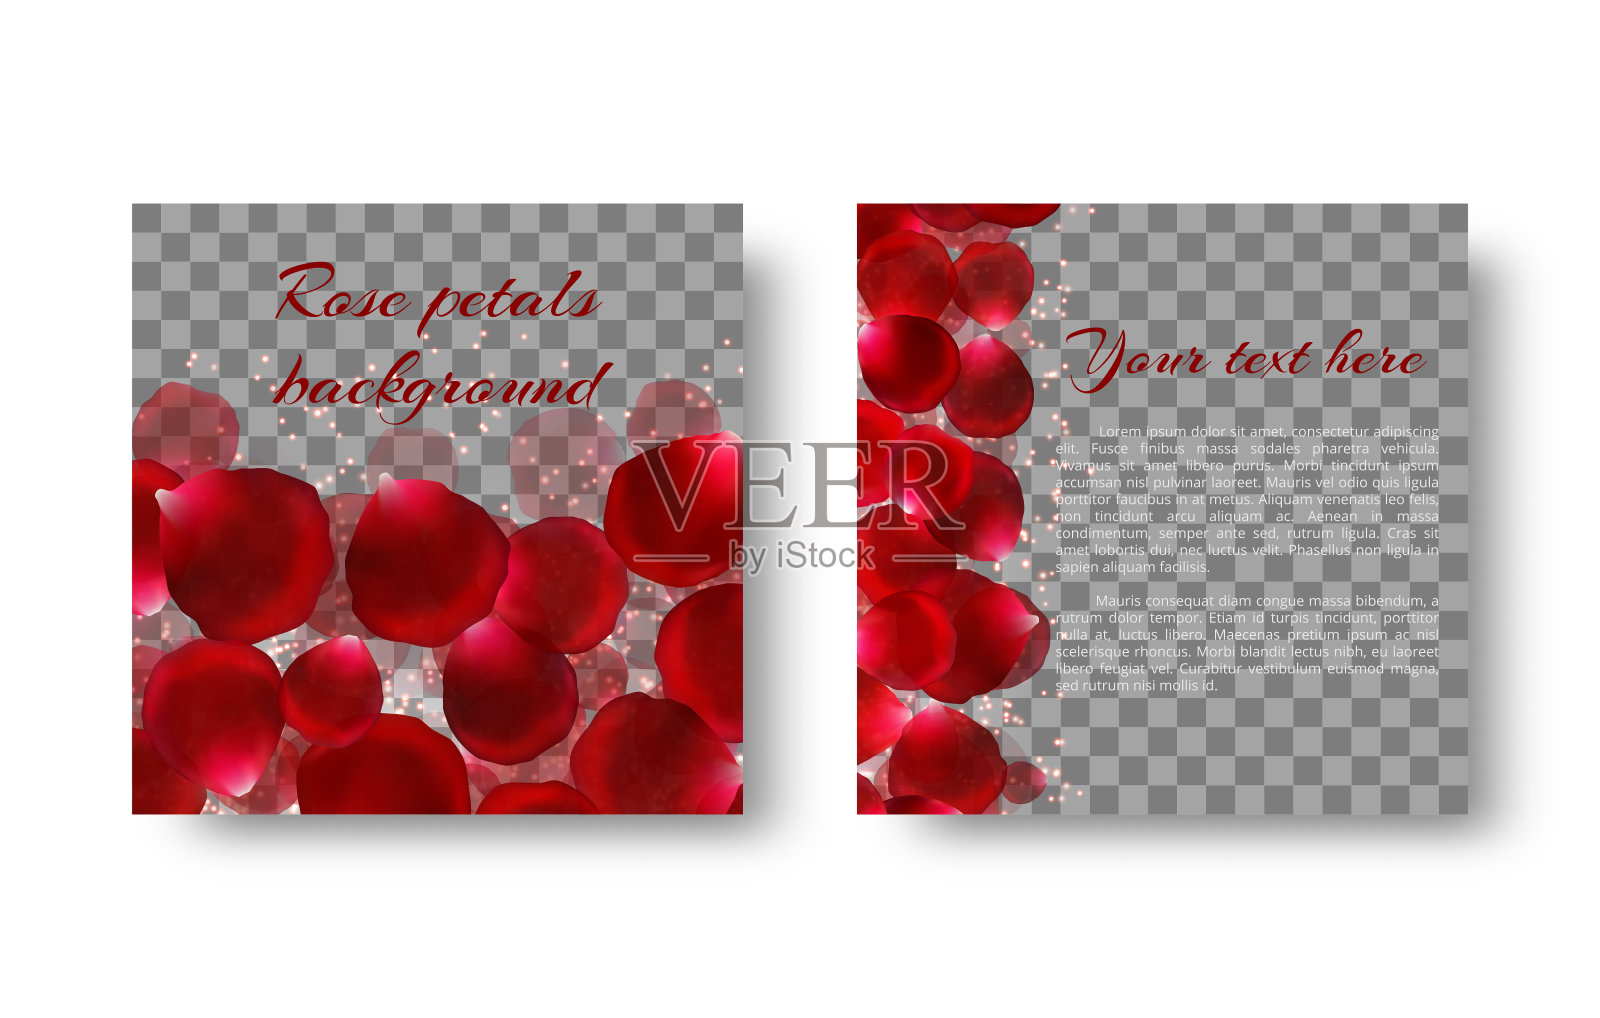 模板贺卡与红玫瑰花瓣设计模板素材